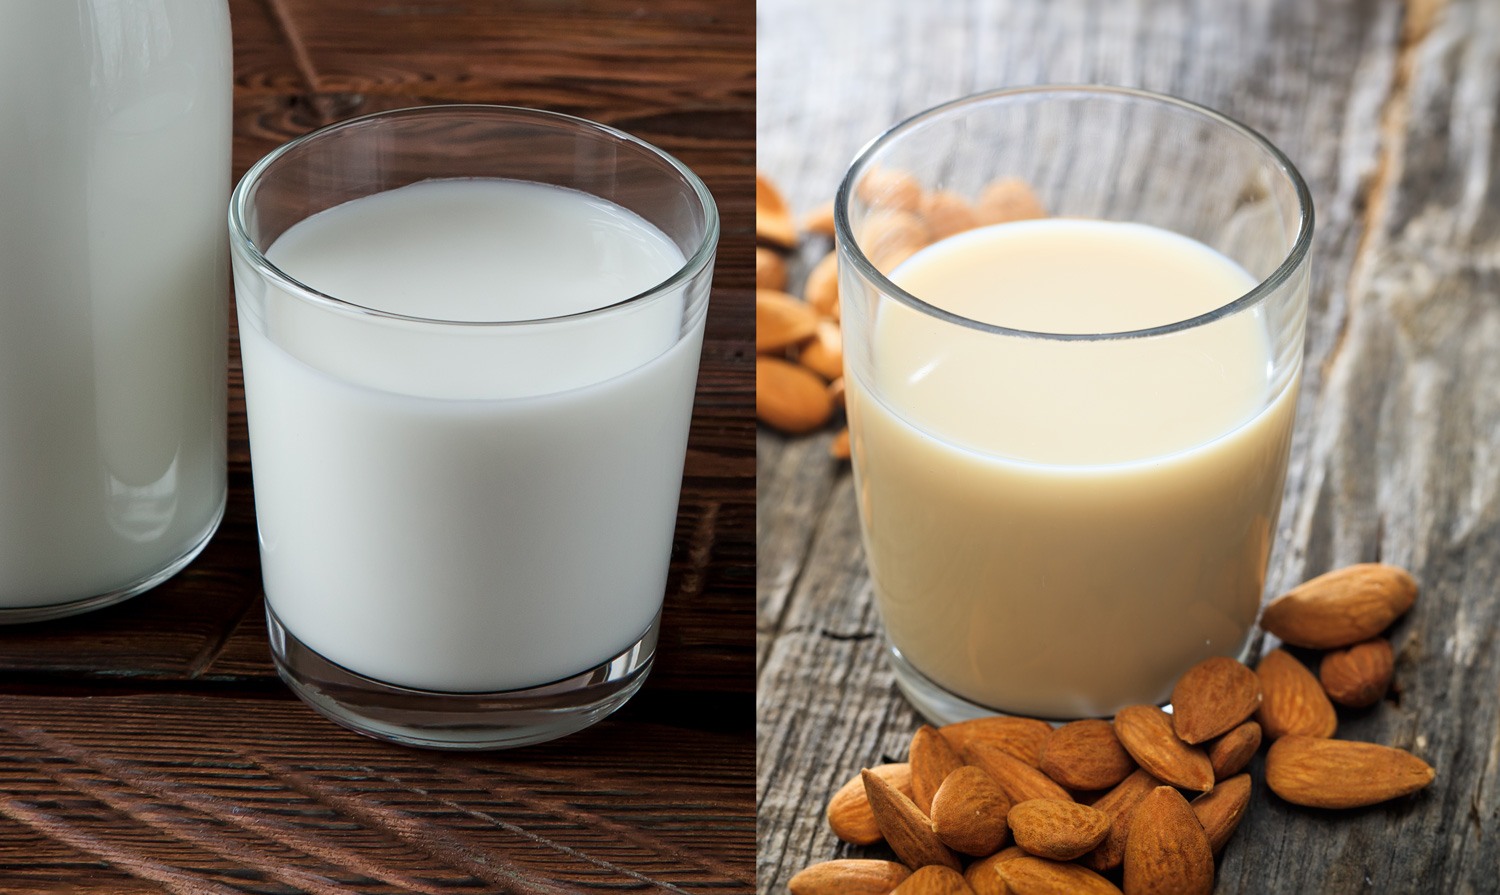 Alimentation. Les laits végétaux sont-ils vraiment bons pour la santé ?